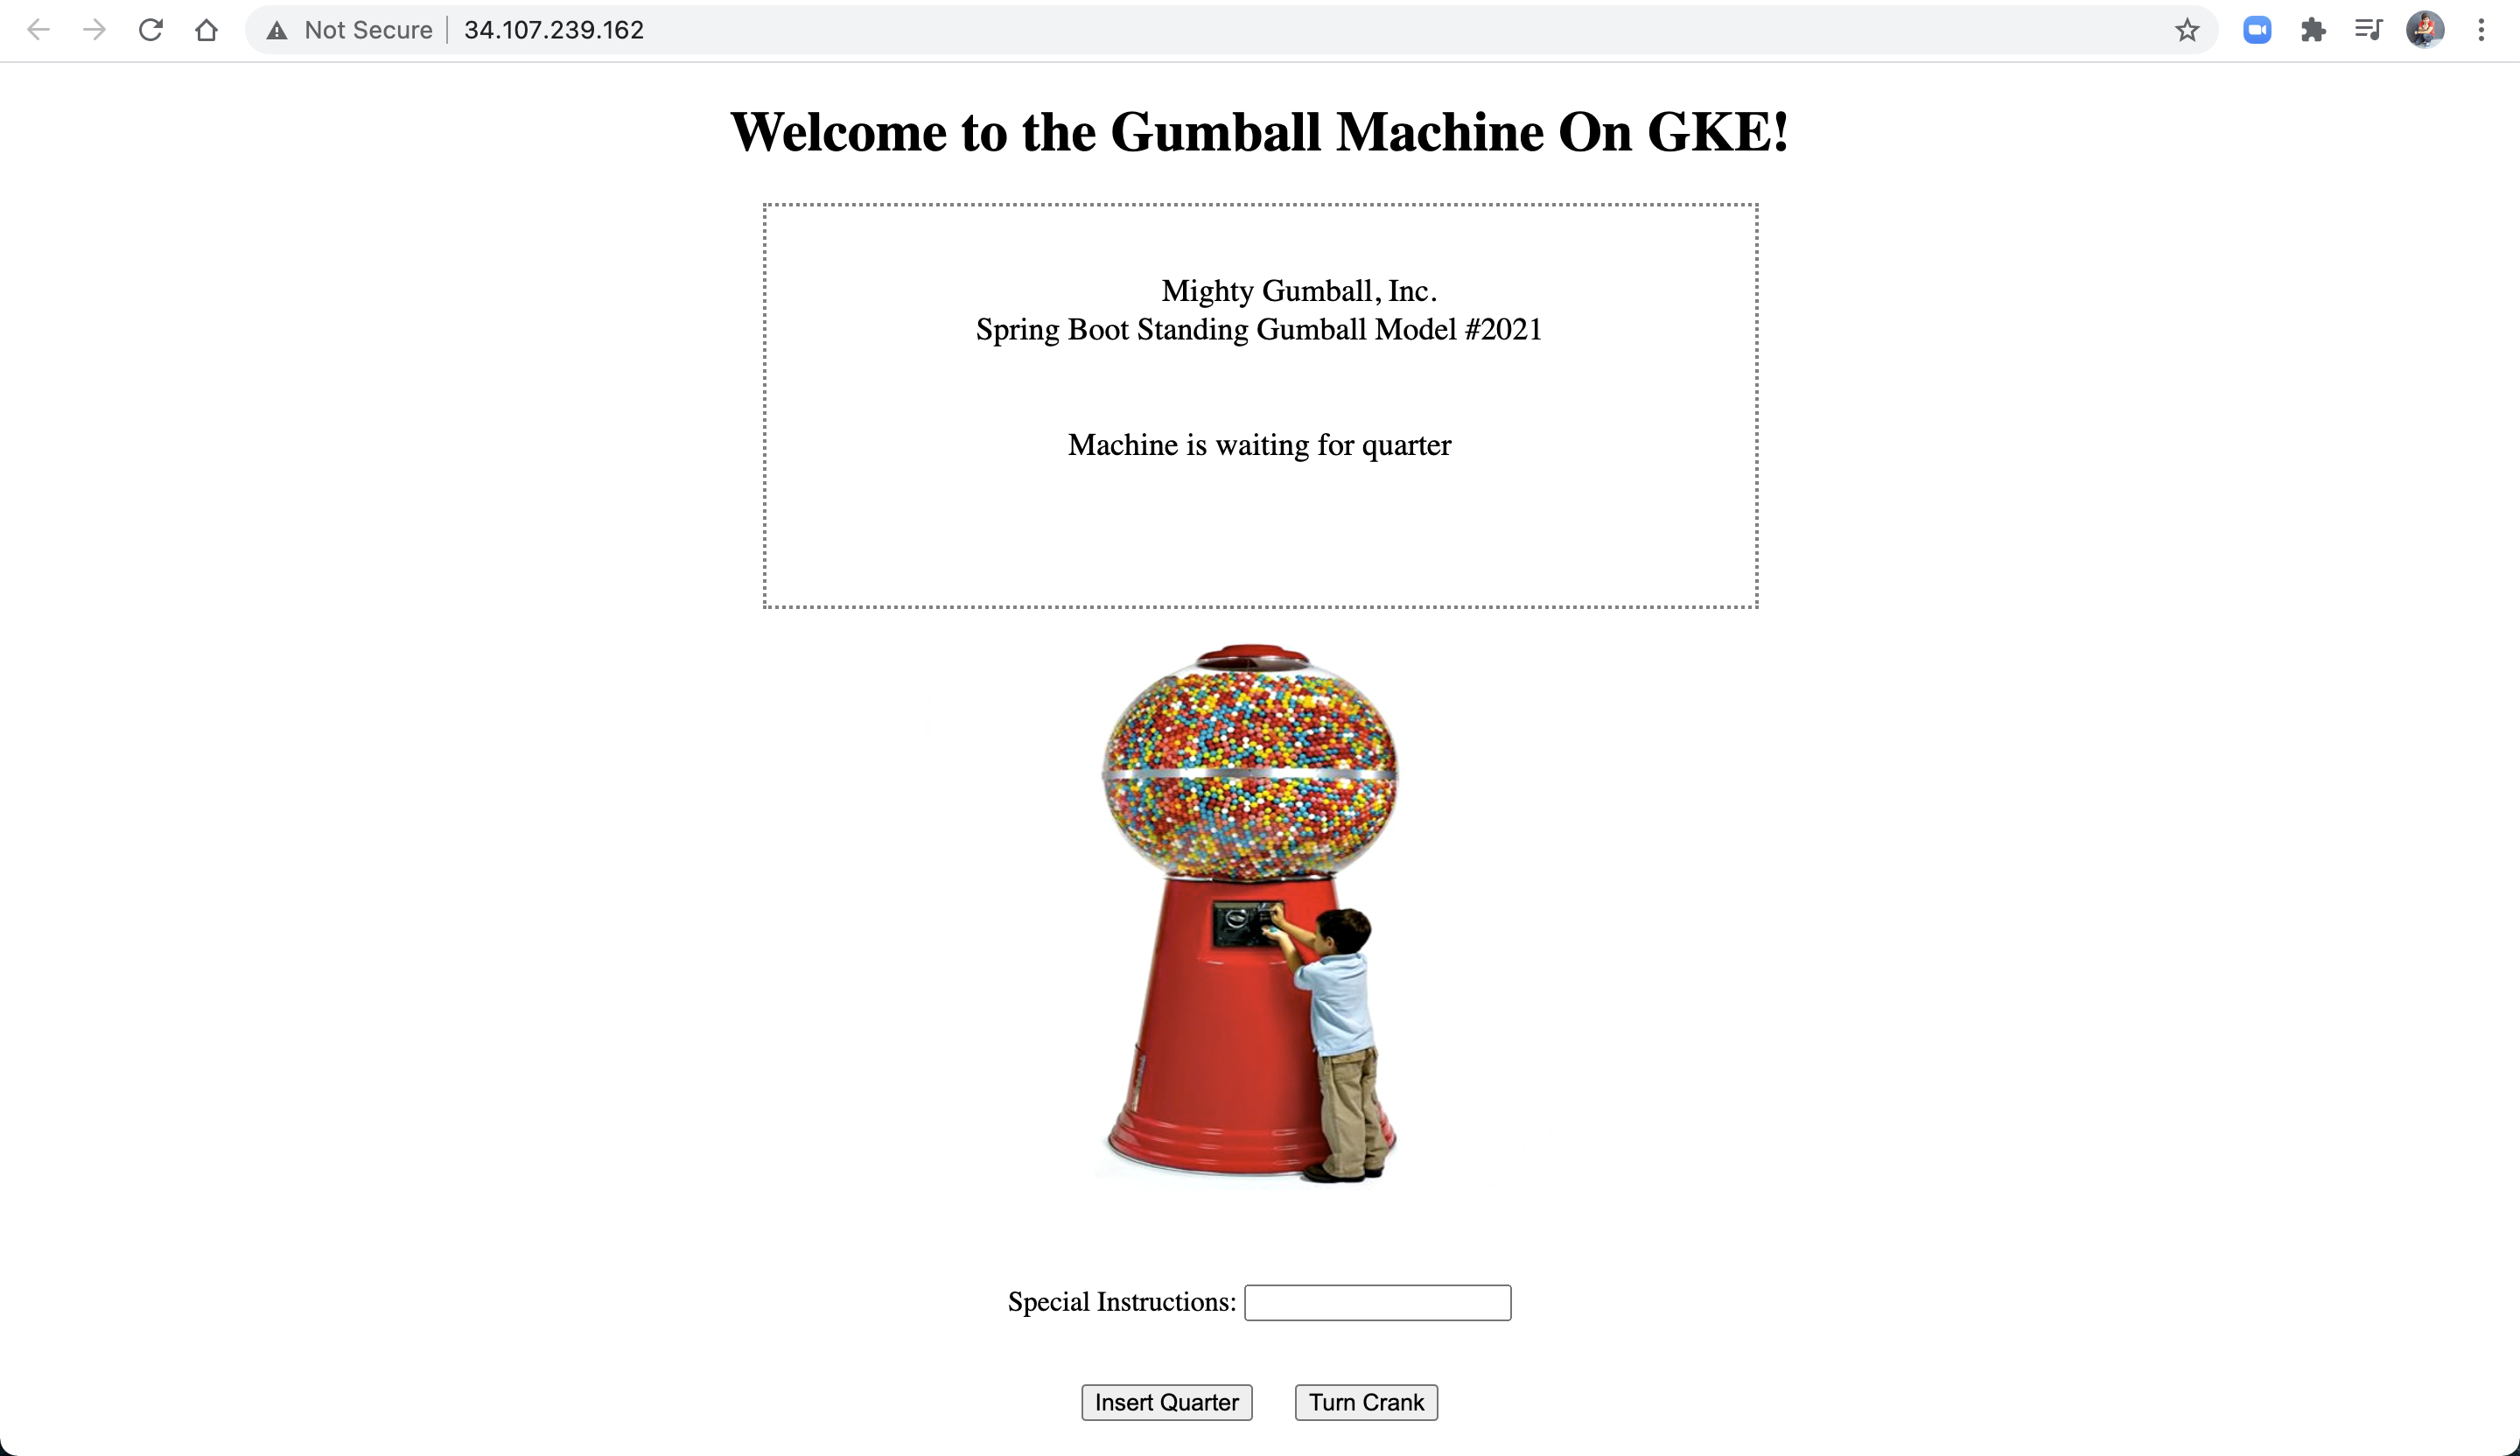 Gumball Machine on GKE